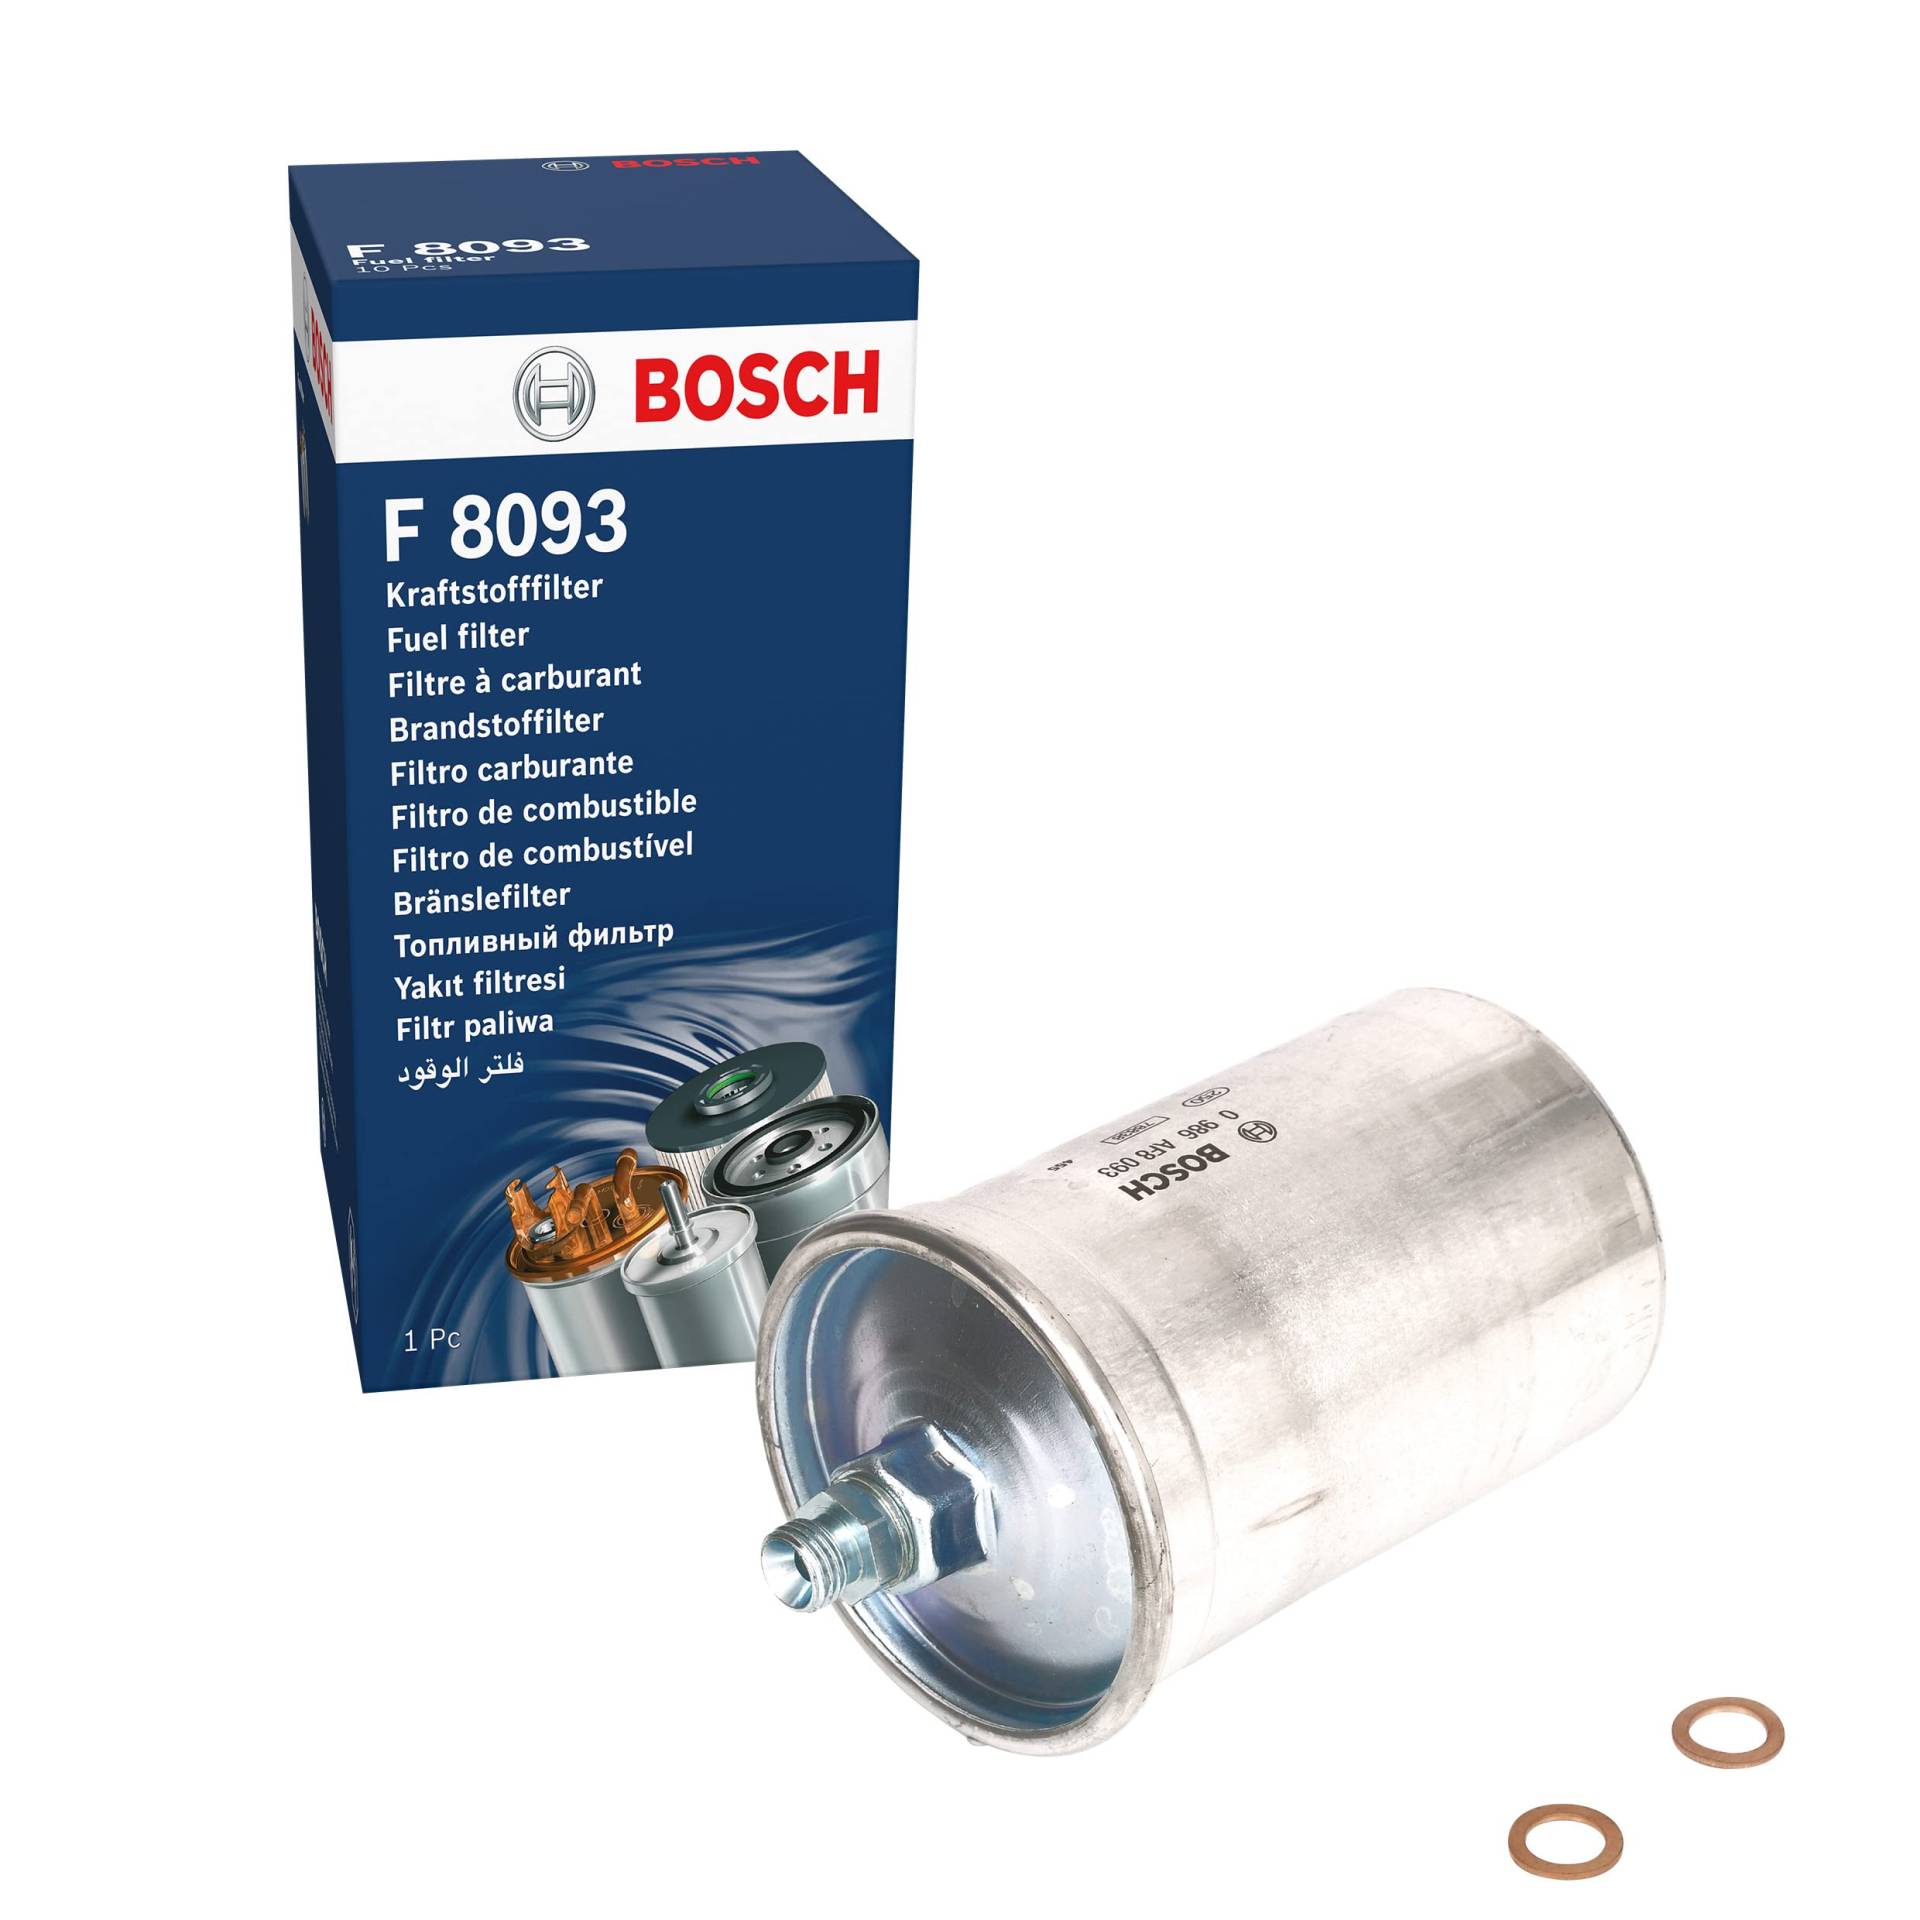 Bosch F8093 - Benzinfilter Auto von Bosch Automotive